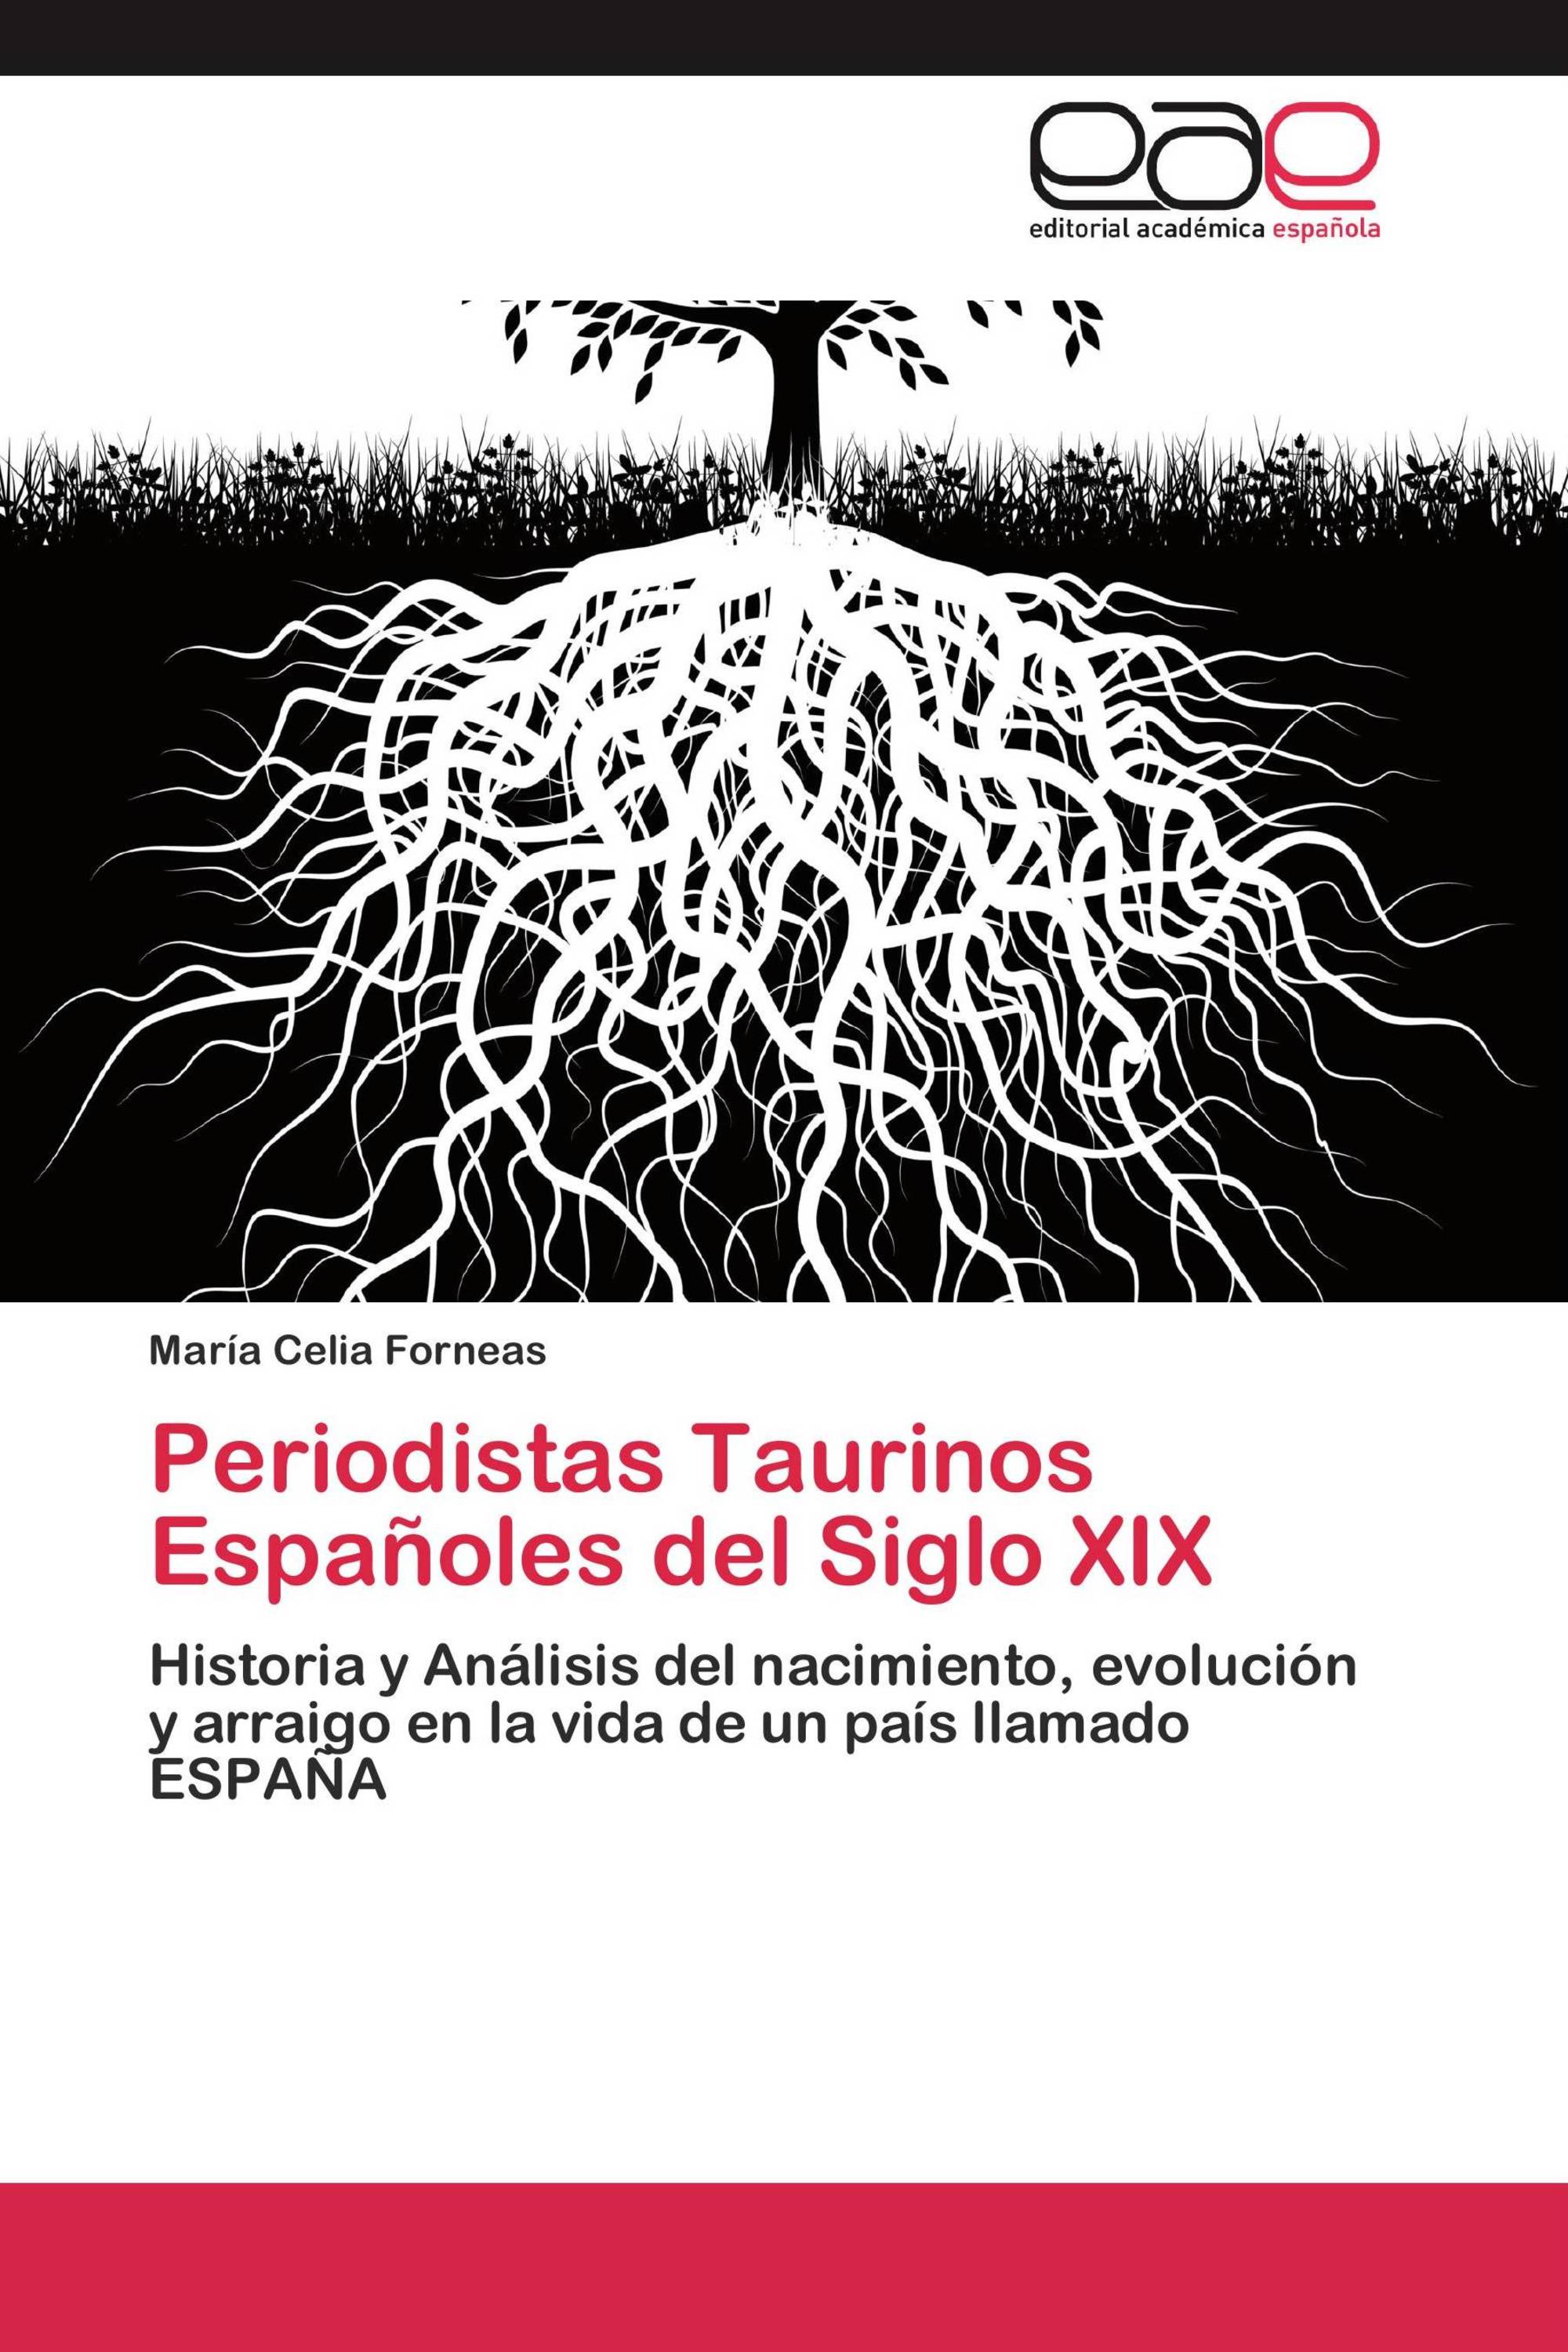 Periodistas Taurinos Españoles del Siglo XIX